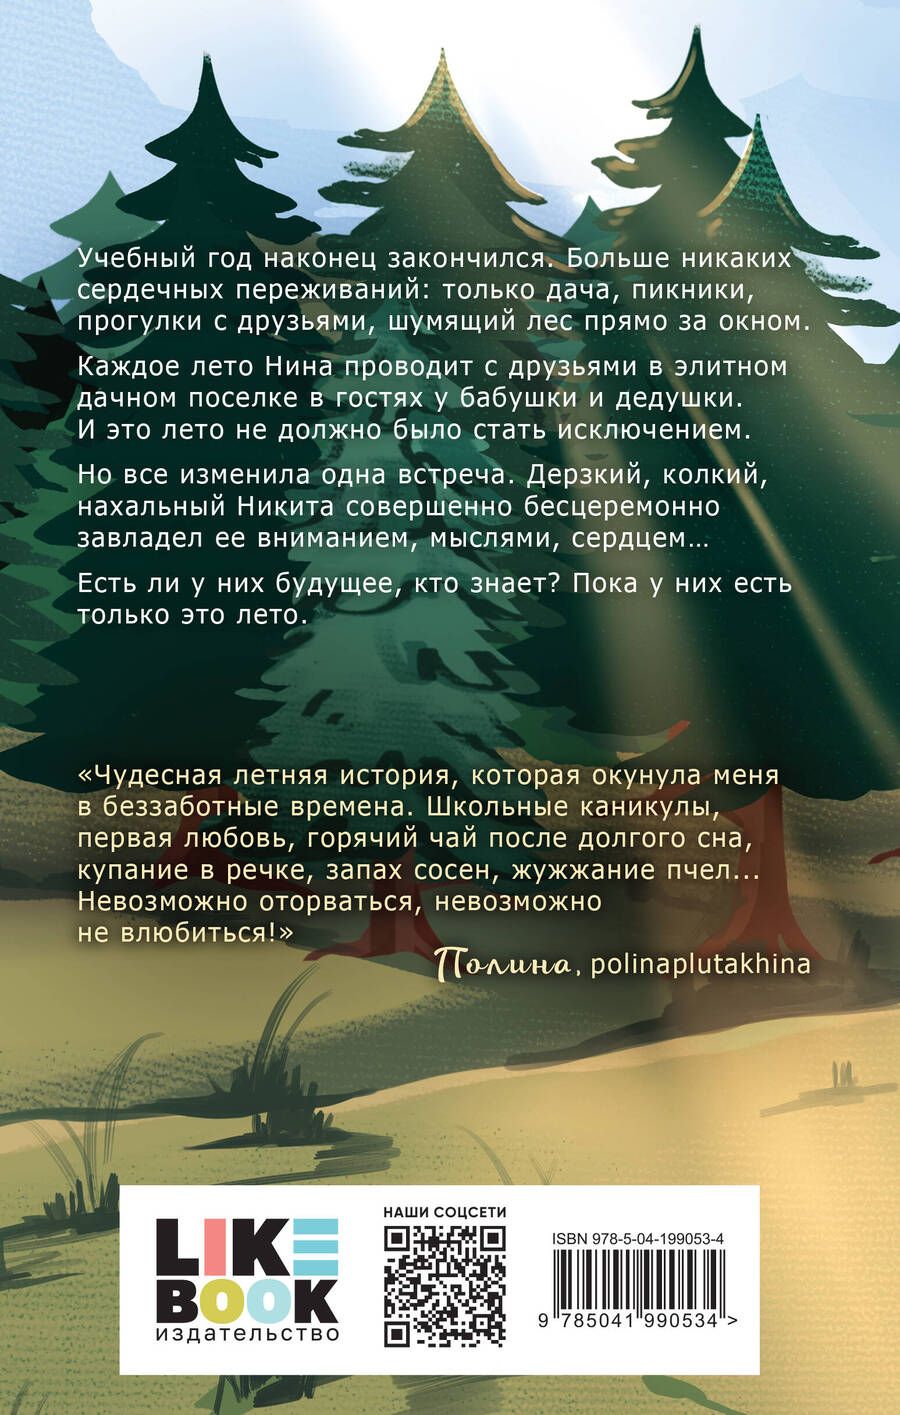 Обложка книги "Зина Кузнецова: Майское лето"